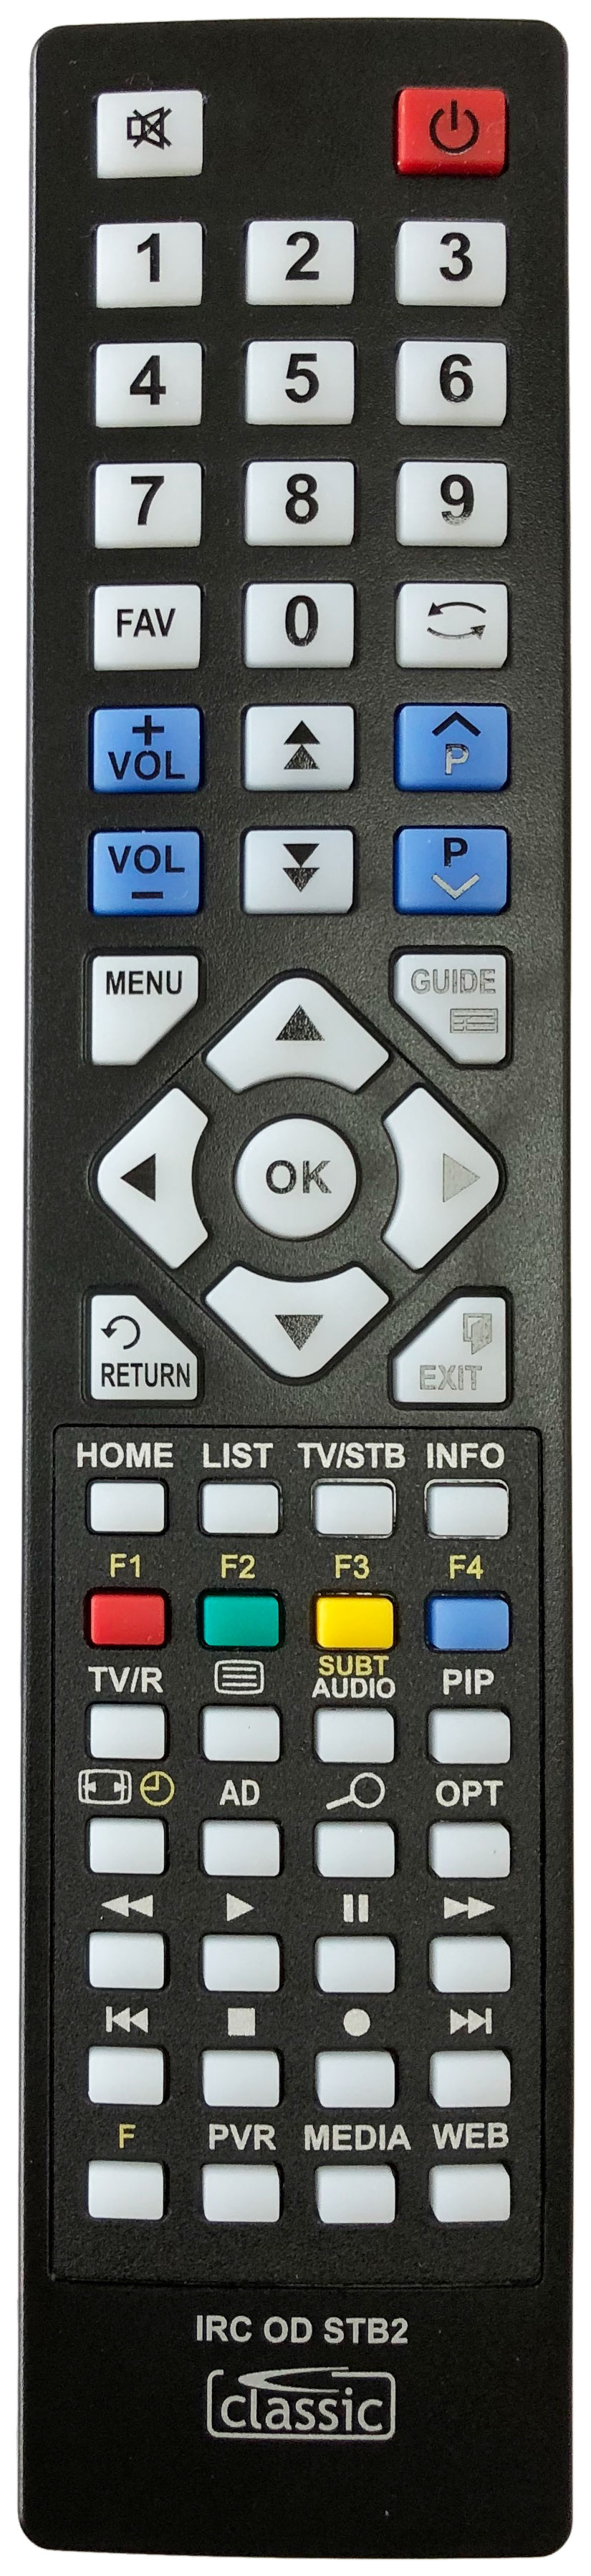 HUMAX DTR-T1000 Remote Control Alternative